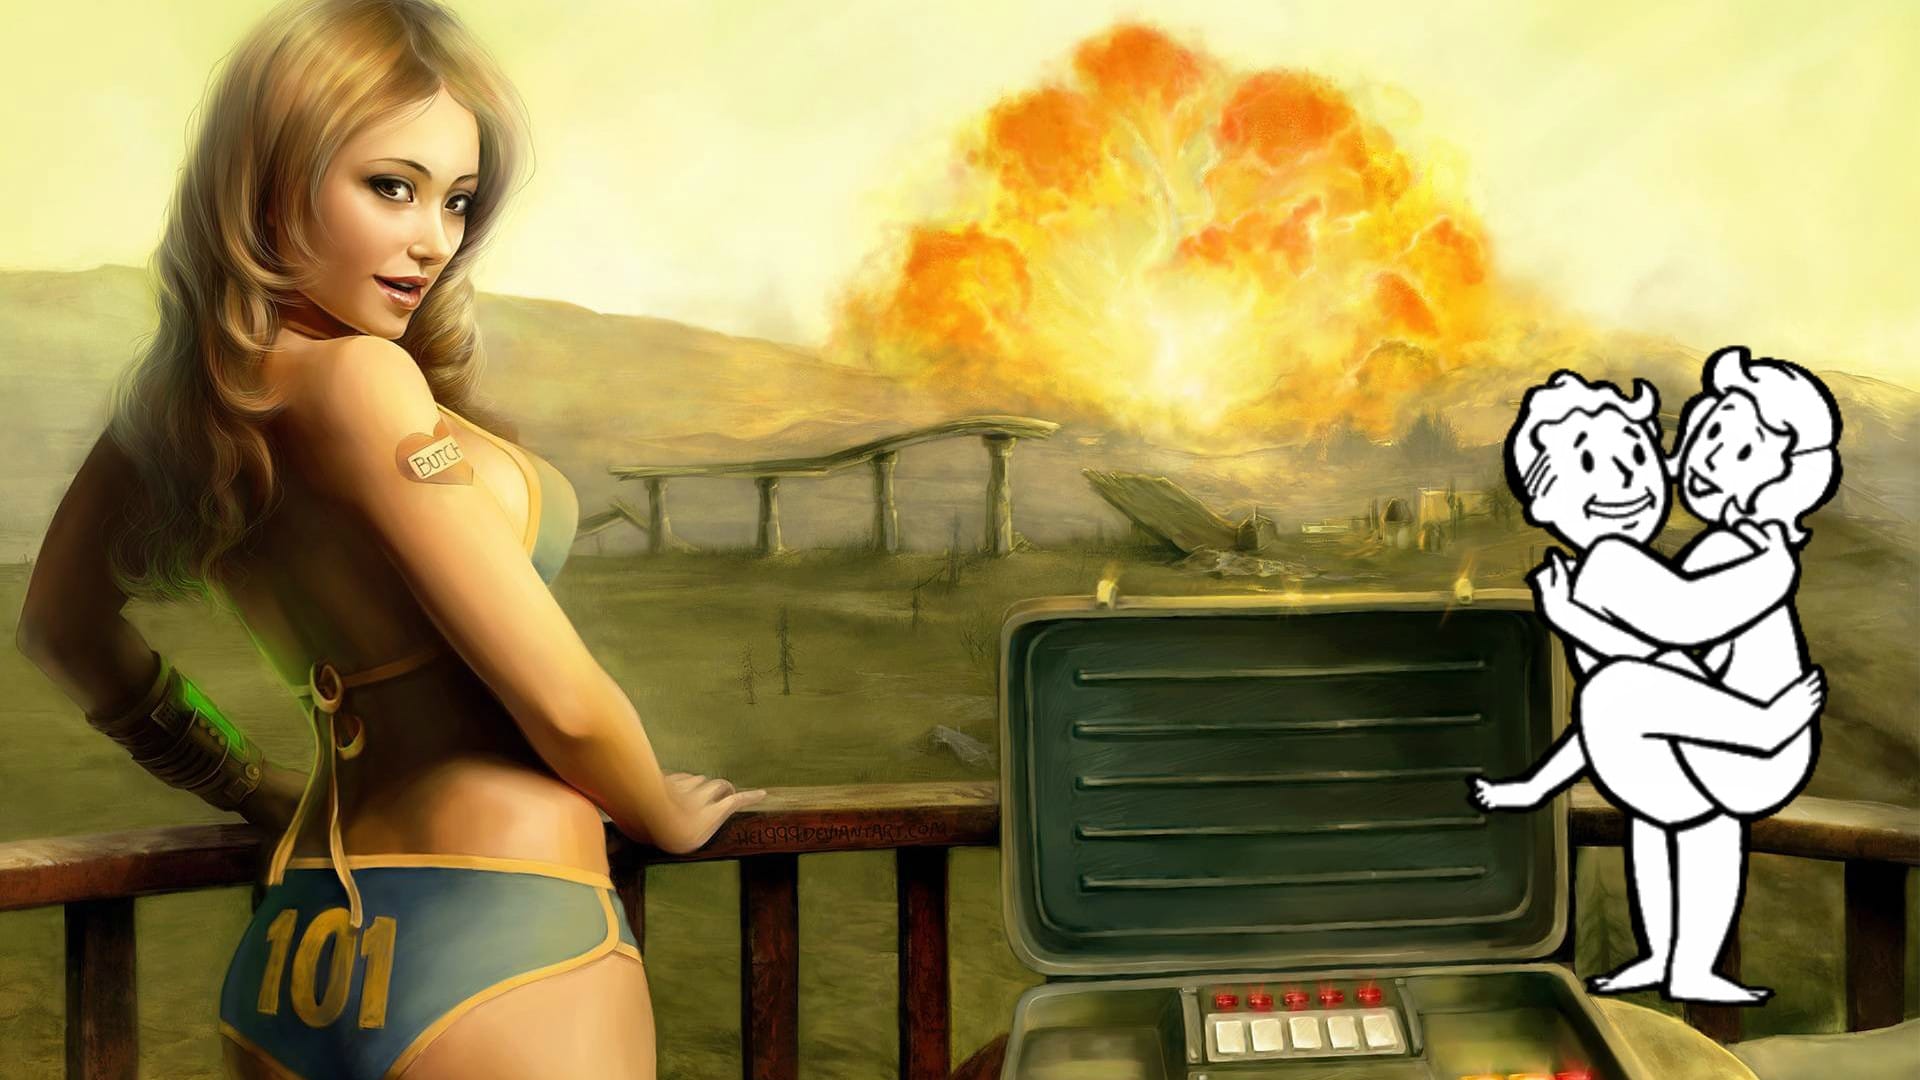 Hra Fallout má speciální způsob, jak počítat sexuální potenciál vaší postavy